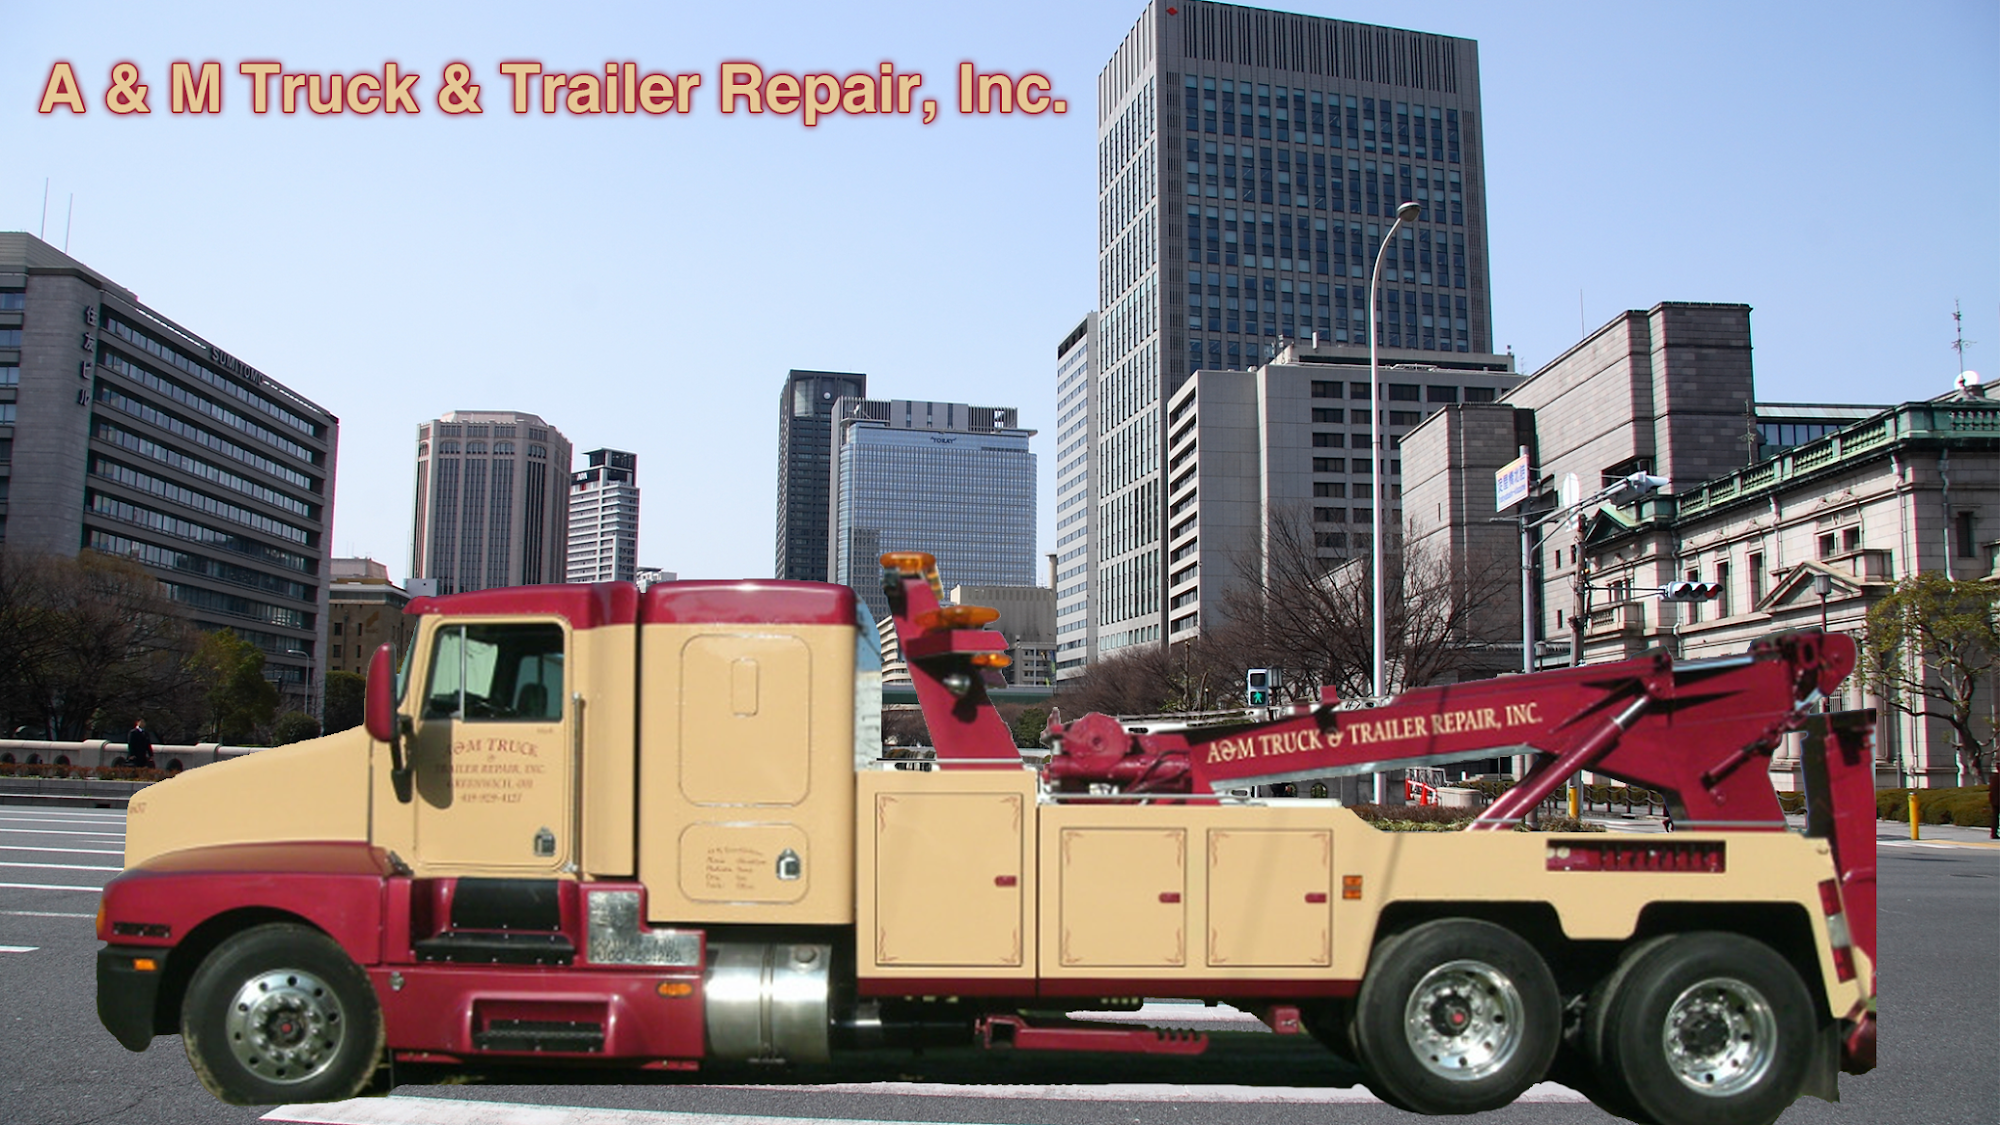 A&M Truck & Trailer Repair, Inc.